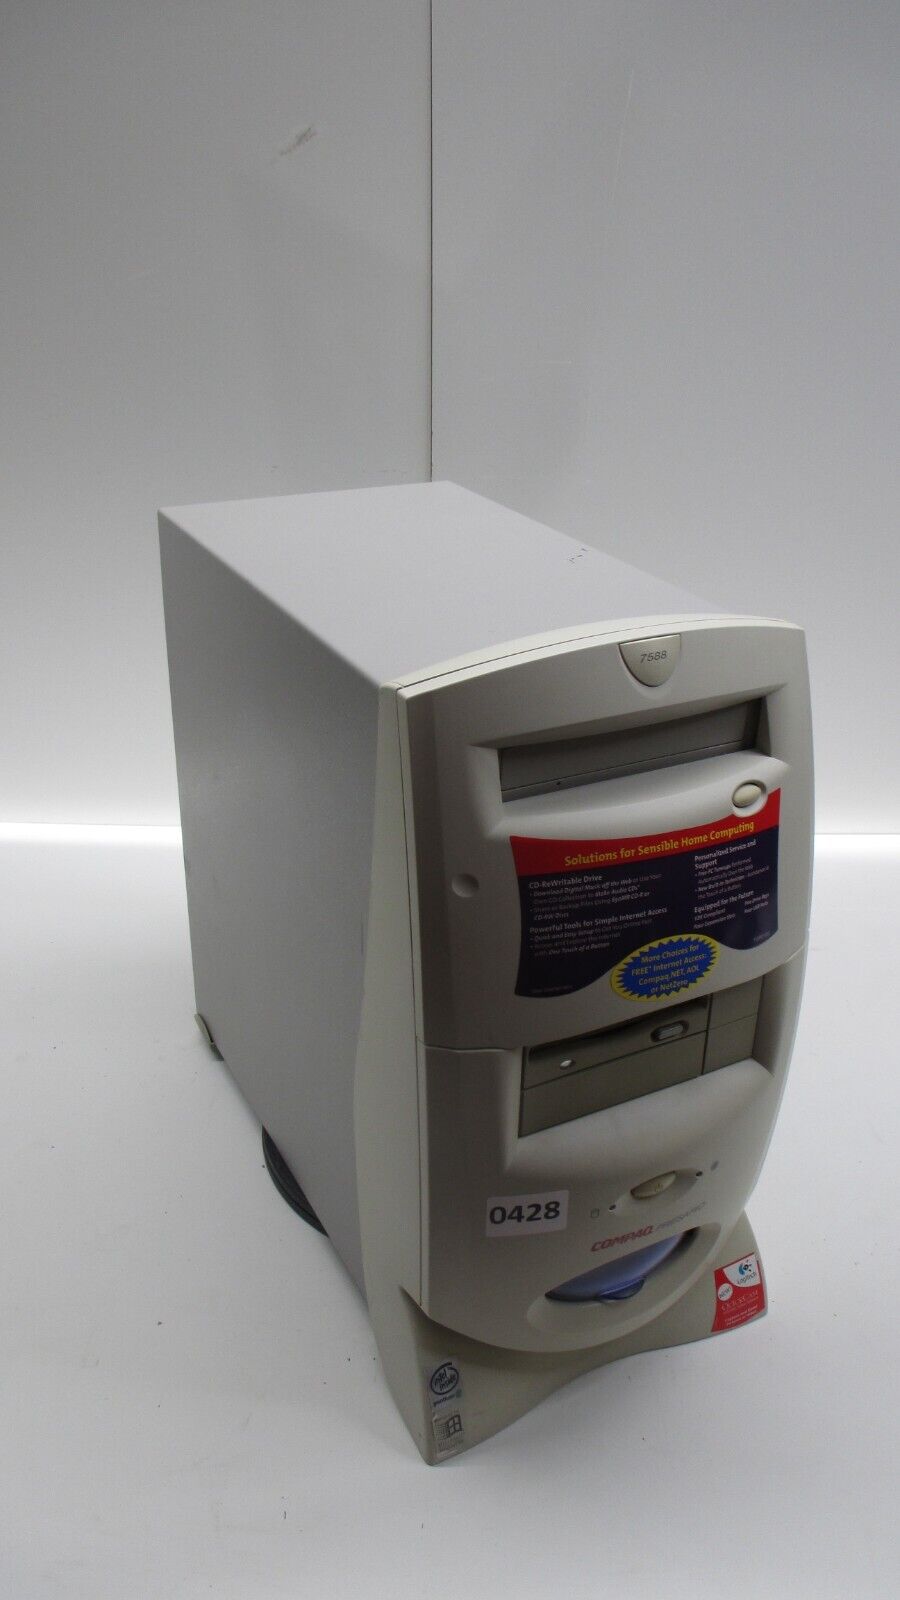 Compaq Presario 7588 Desktop Computer Intel Pentium 3 550MHz 128MB Ram No HDD